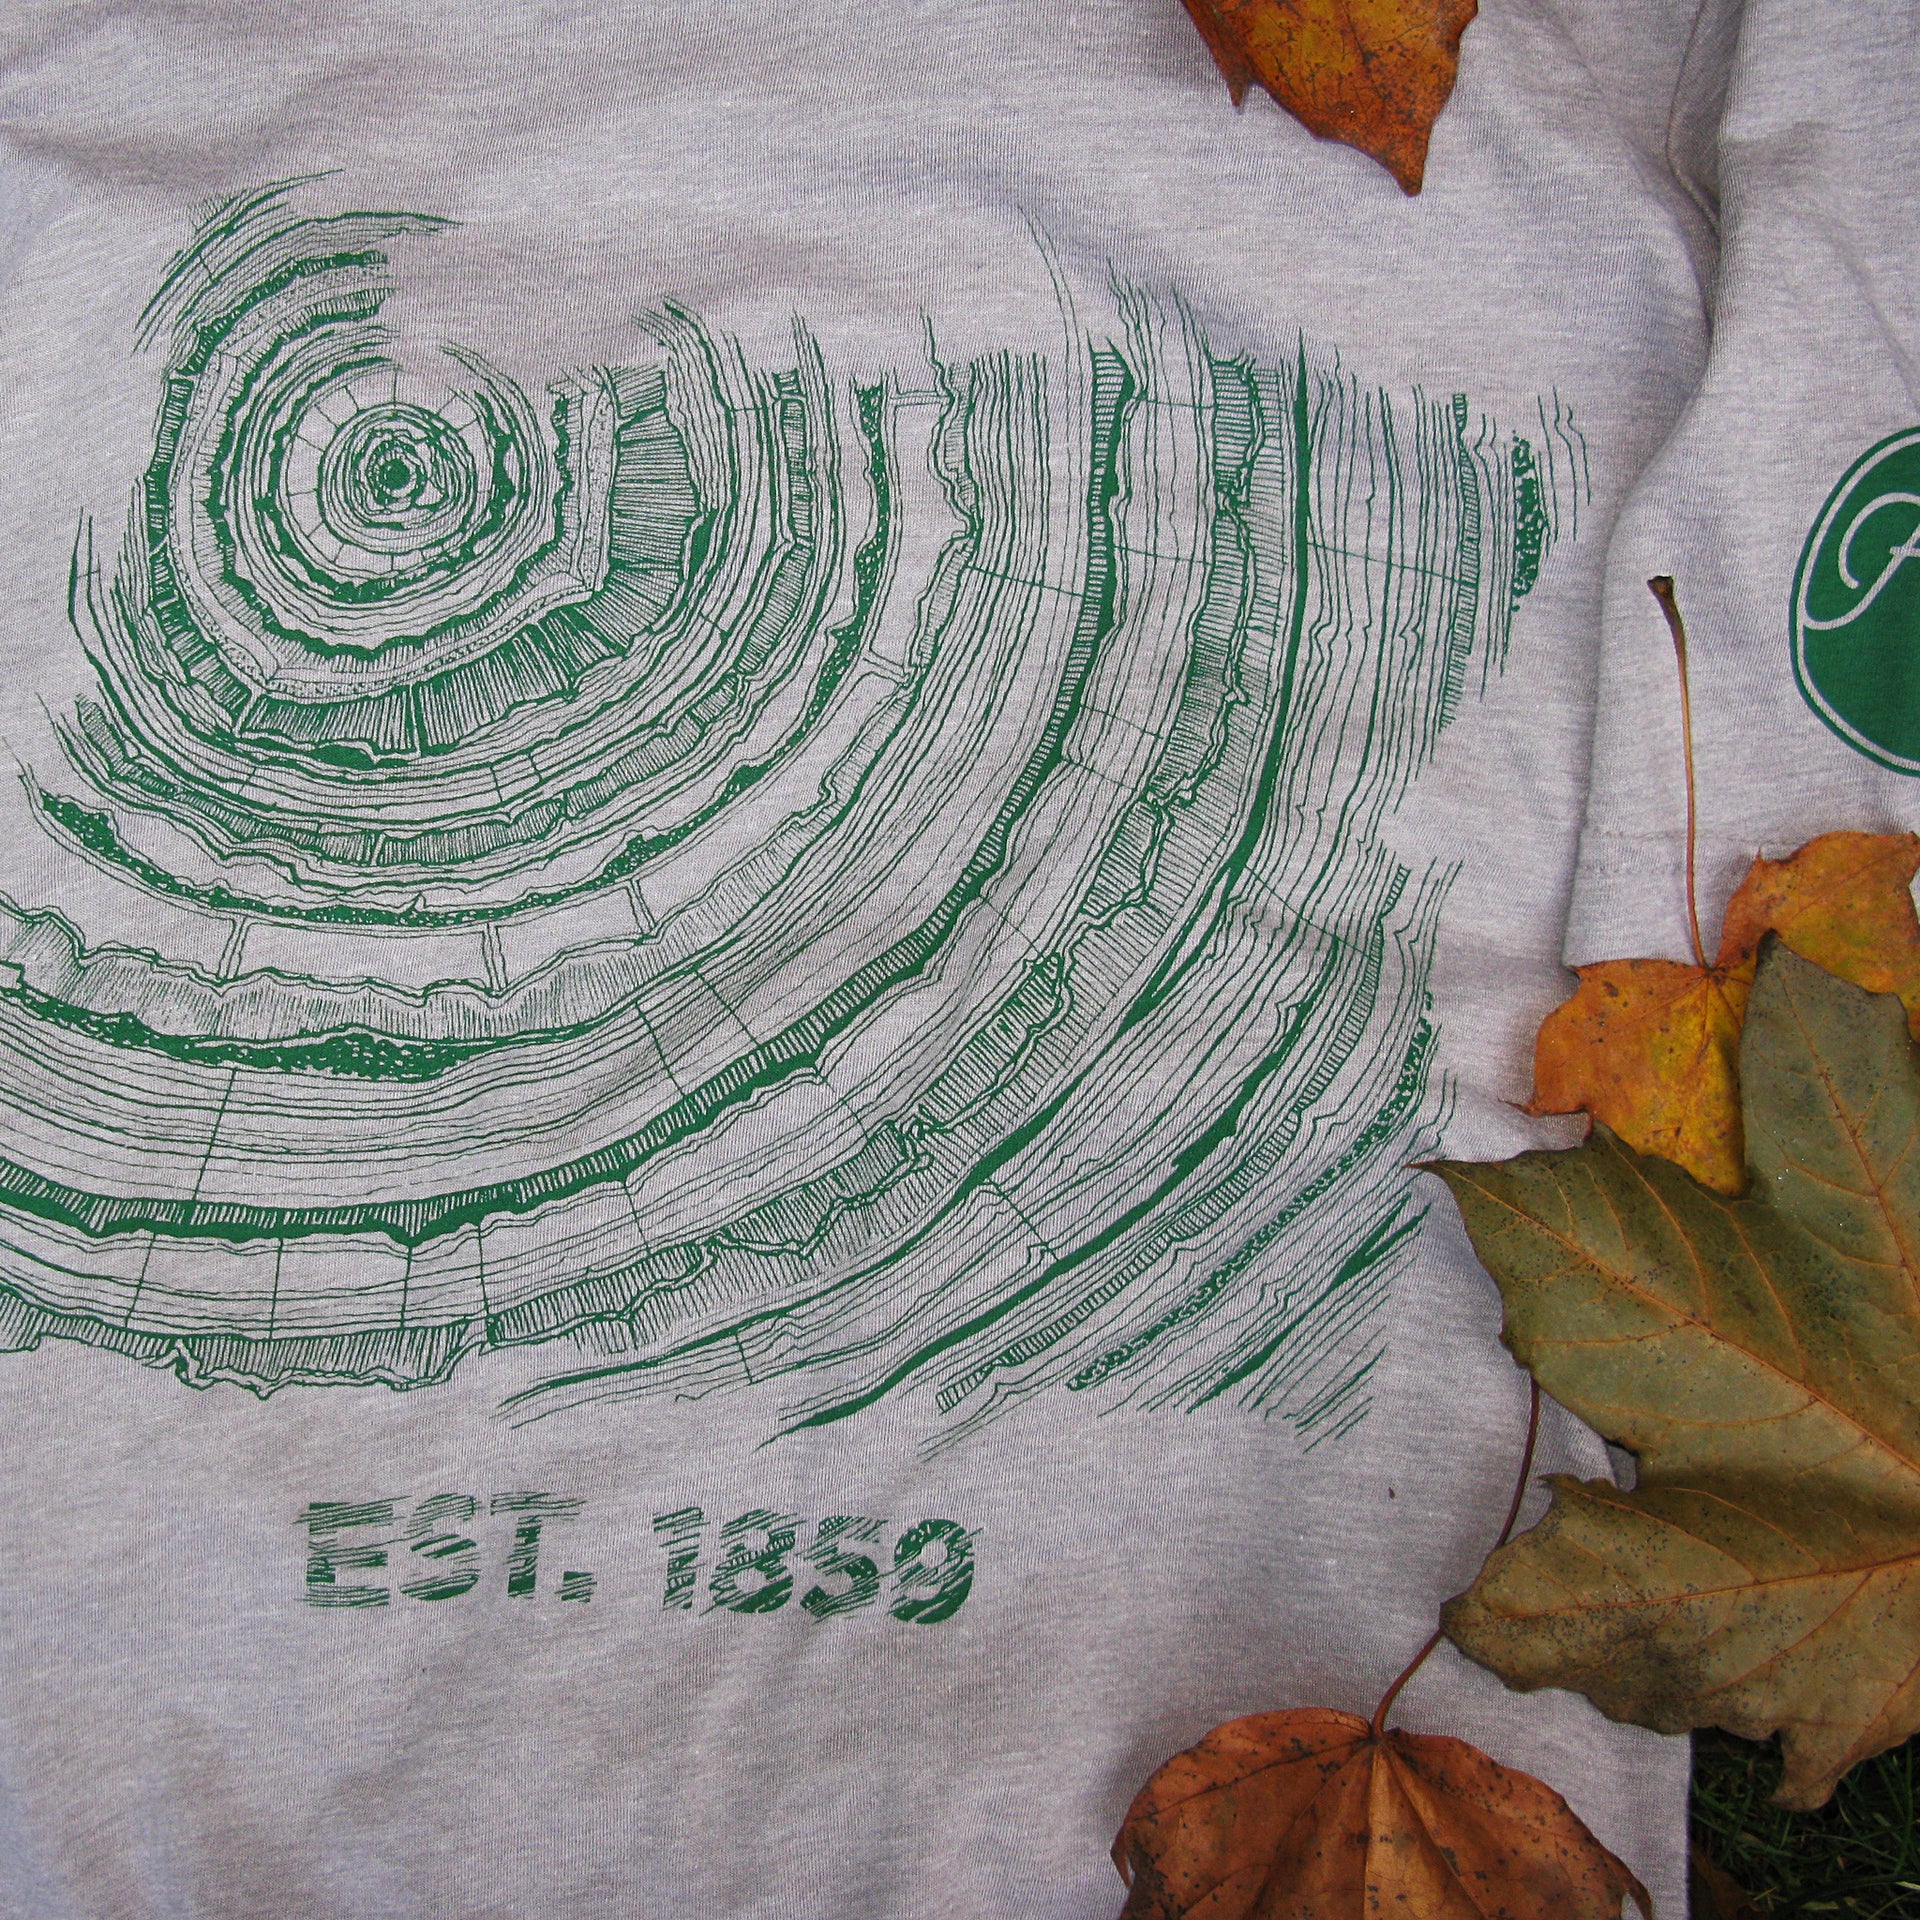 Oregon Tree Rings Shirt